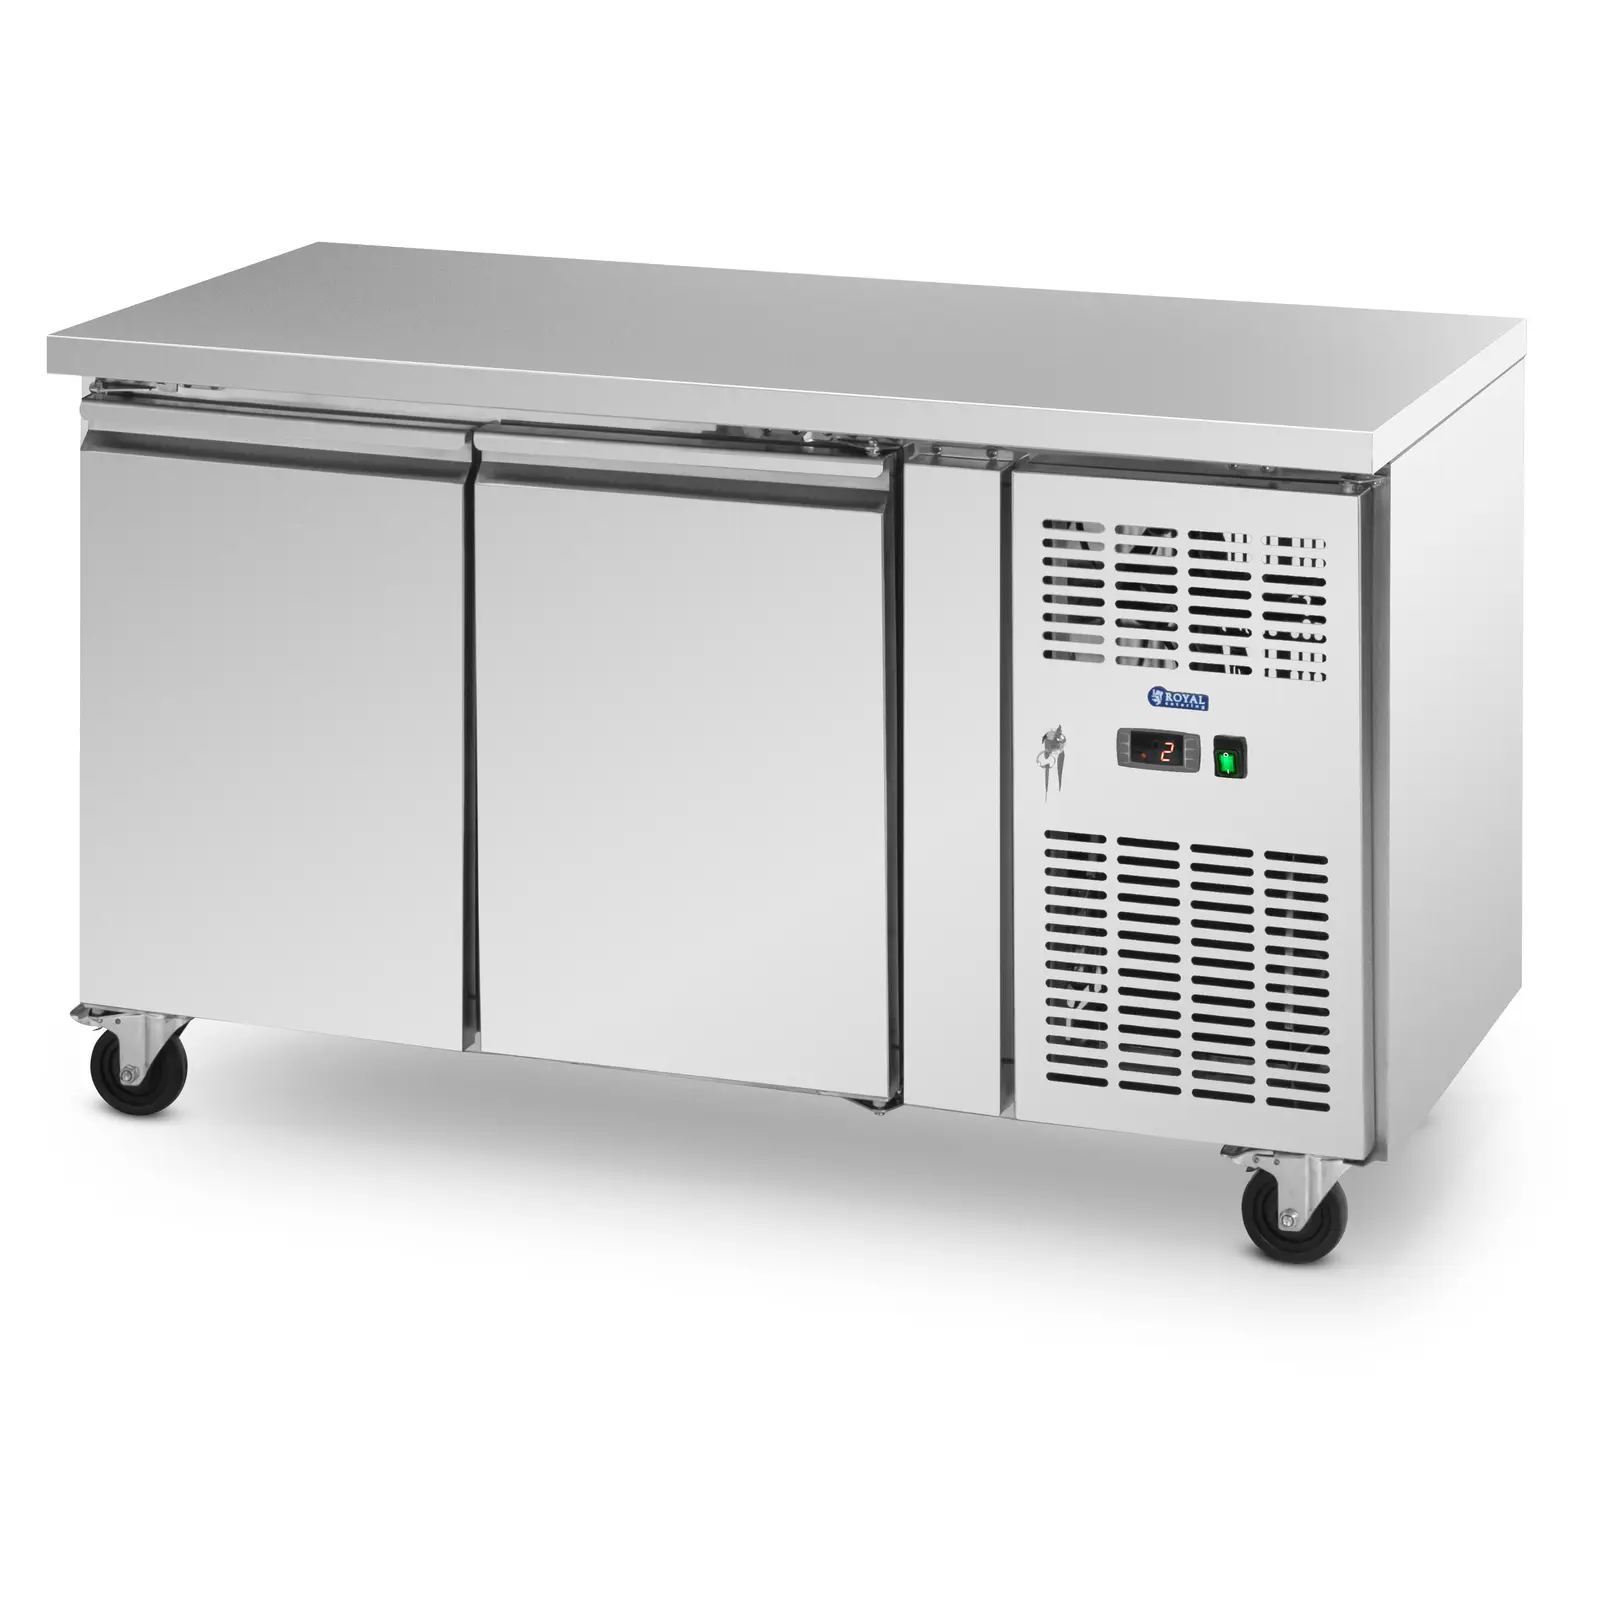 Κινητό ψυγείο σαλατιέρας - 260 l - 2 διαμερίσματα - 136 x 70 cm - κατηγορία B - ανοξείδωτο ατσάλι - Royal Catering